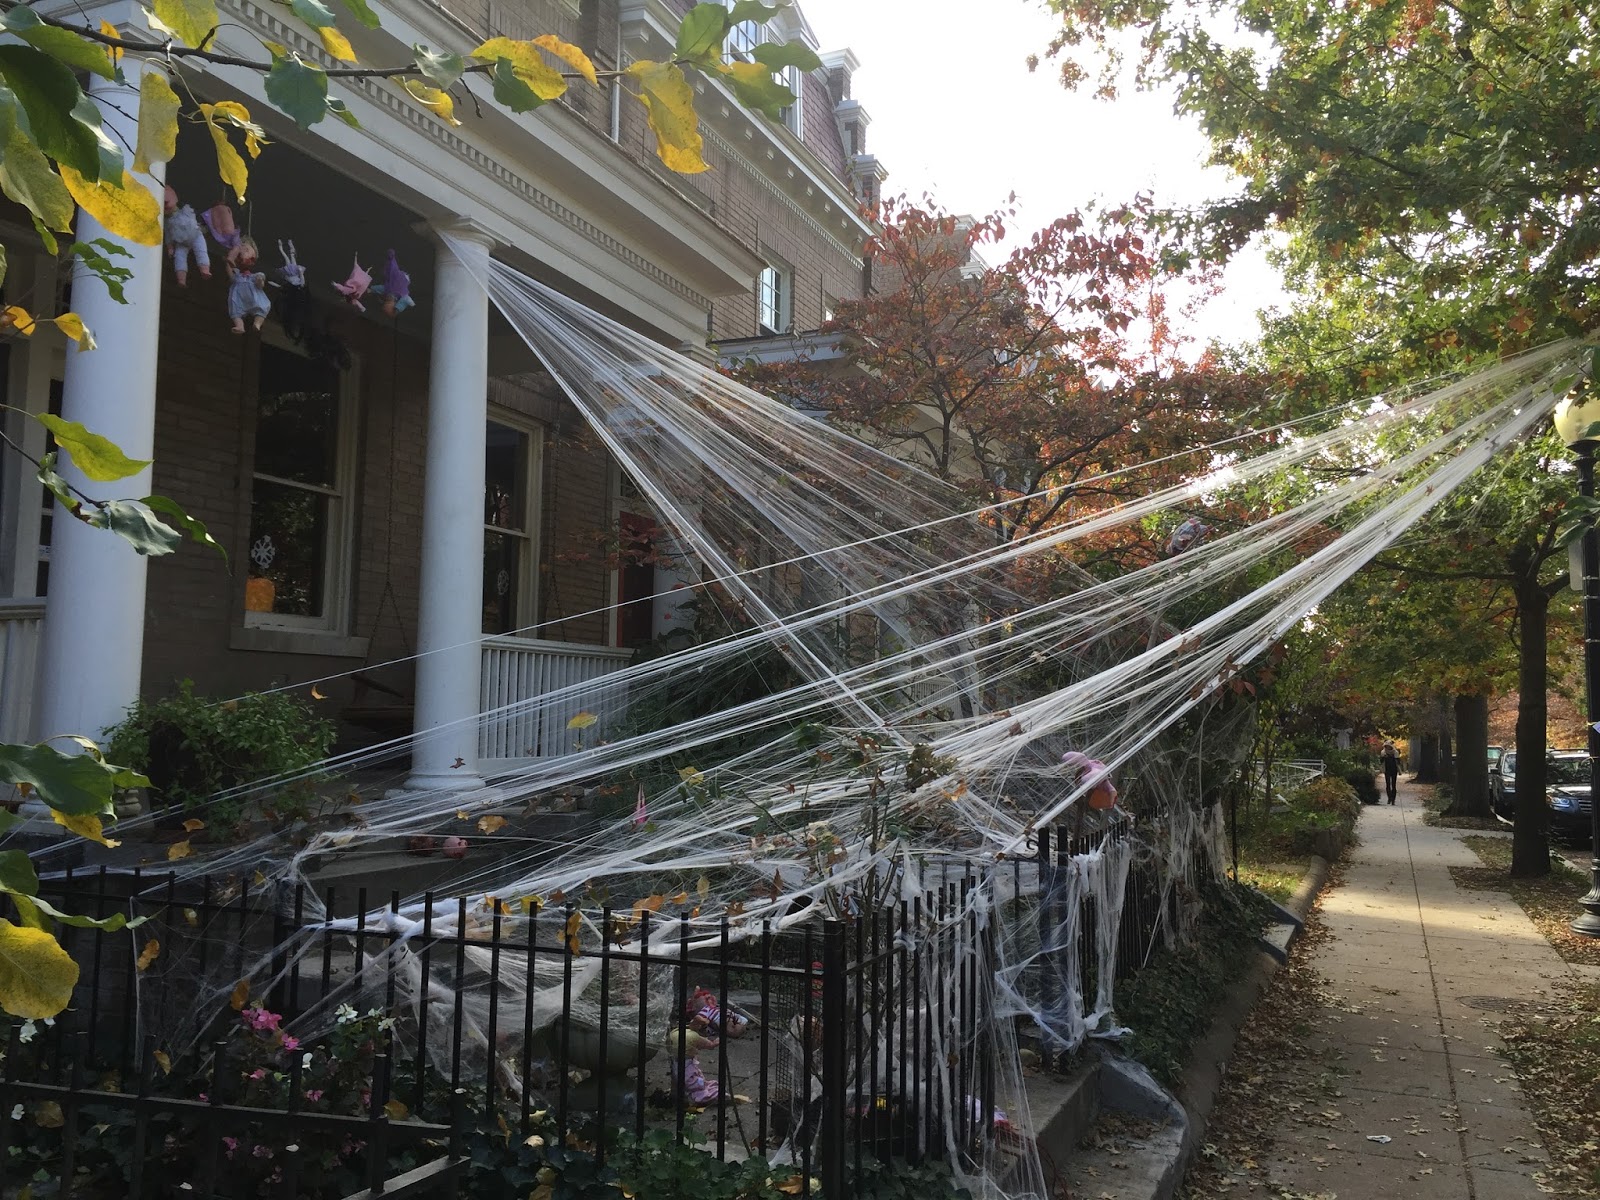 Spider webs all over